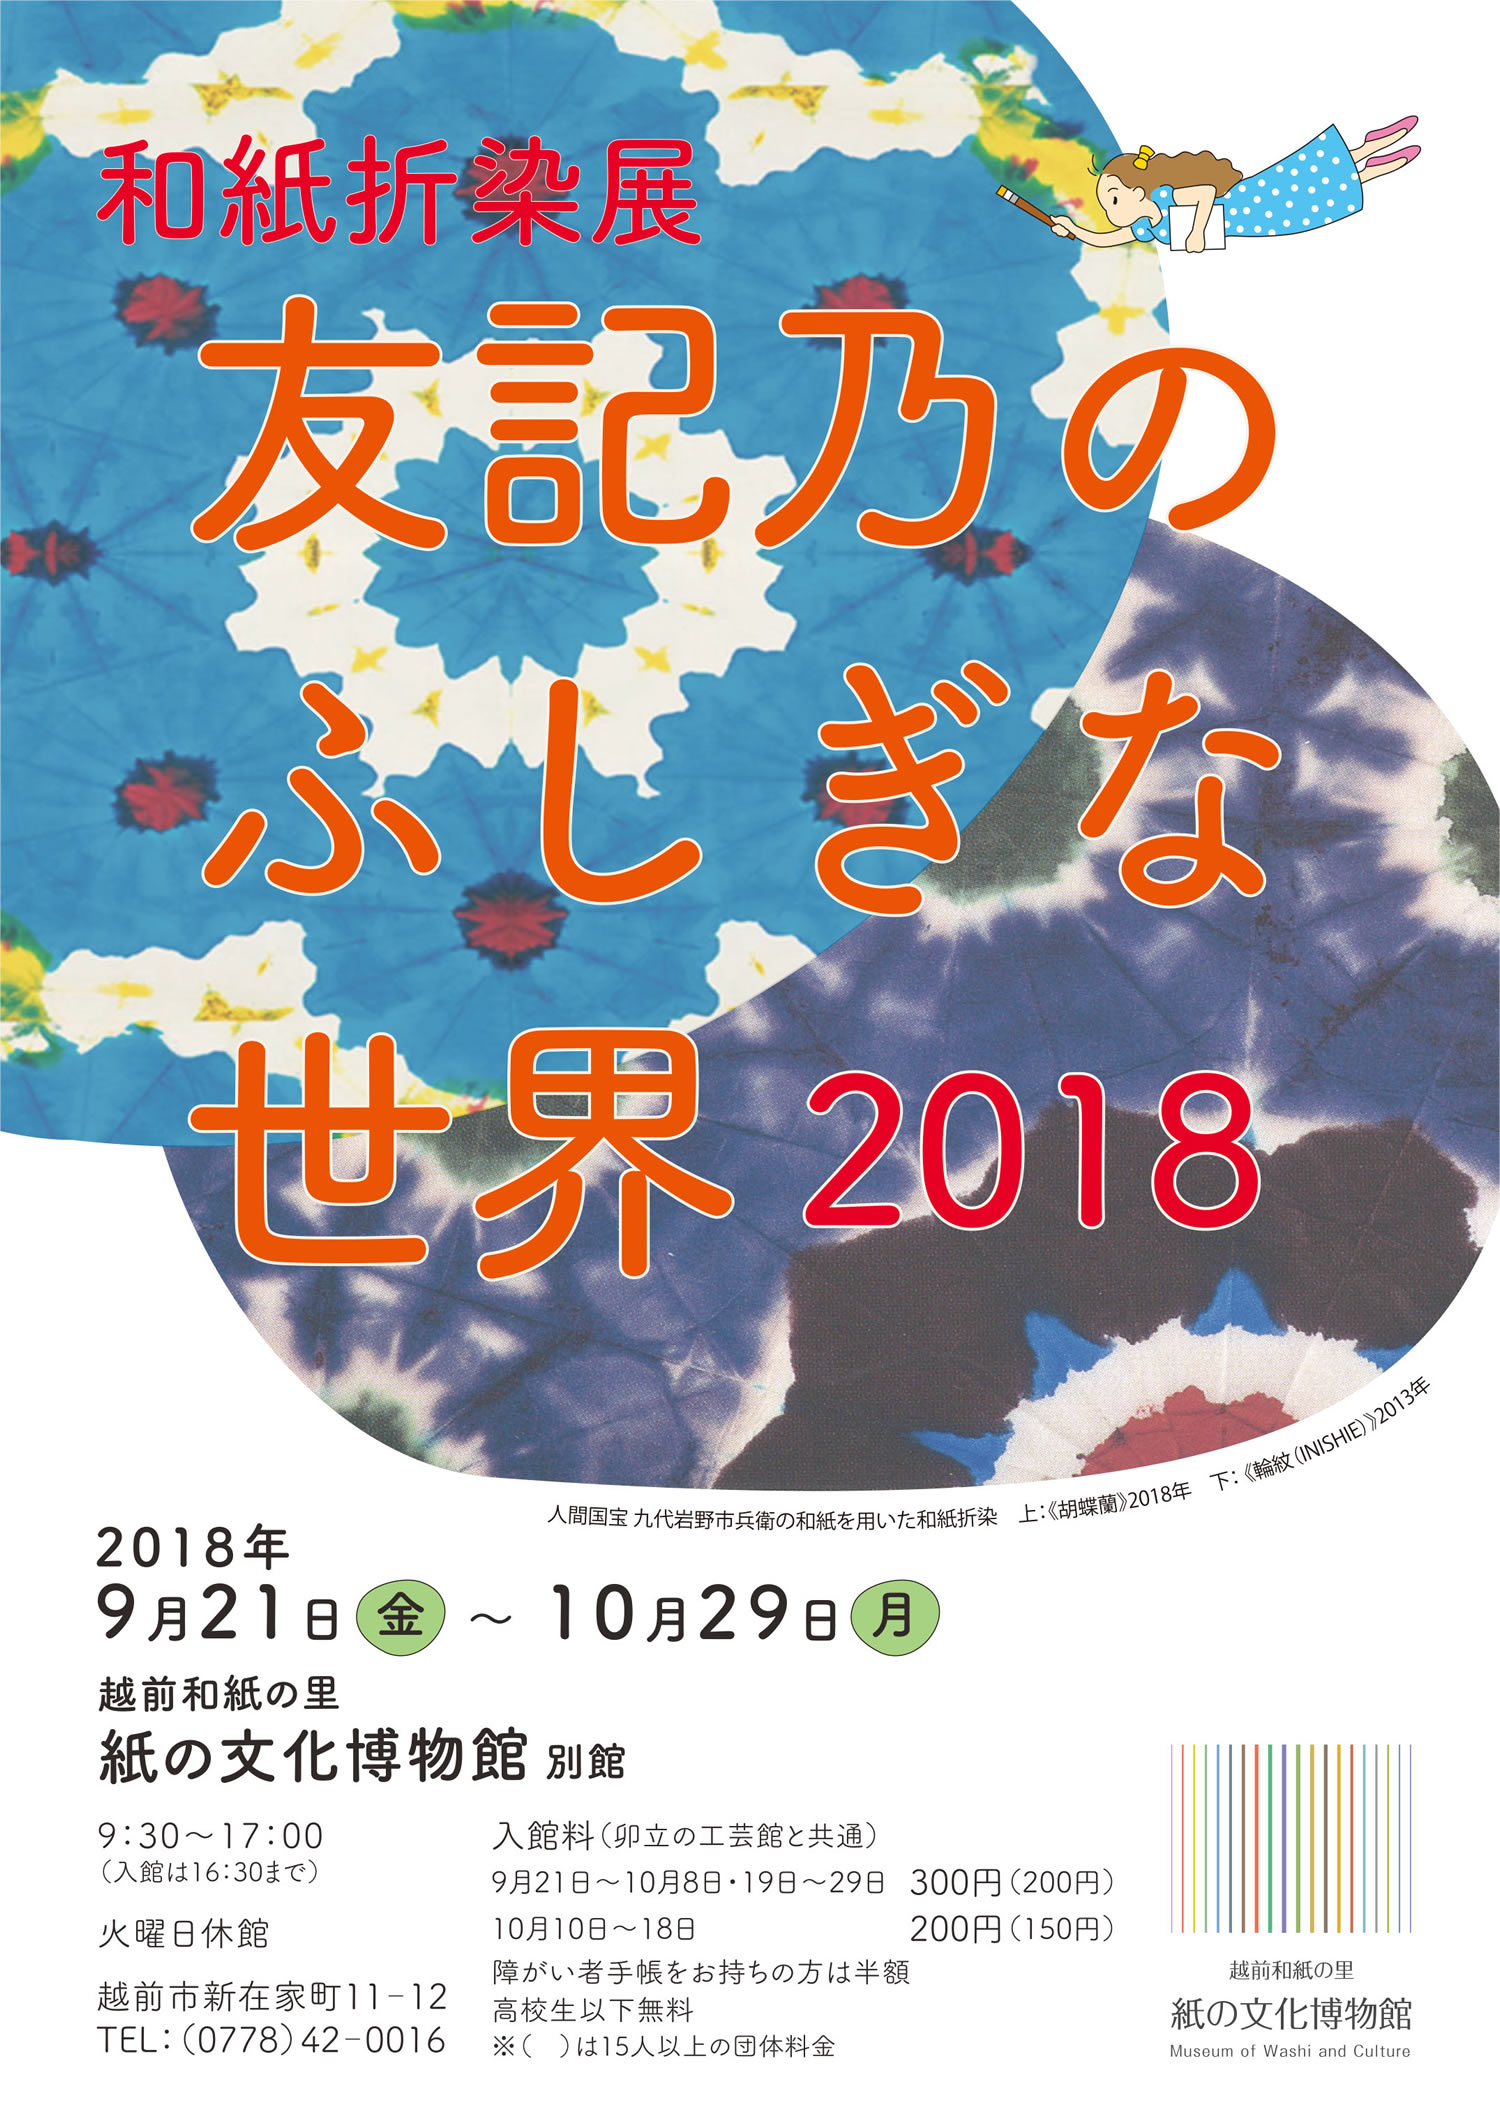  企画展「〜和紙折染展〜友記乃のふしぎな世界 2018」チラシ